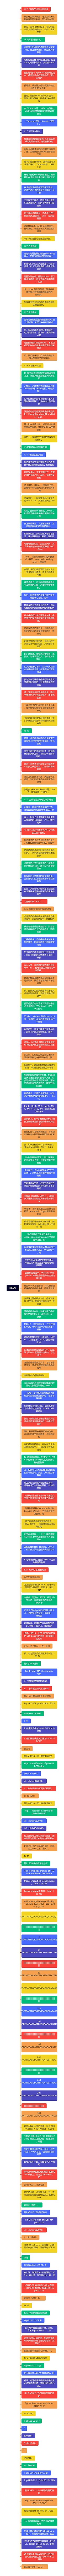 RNAi思维导图